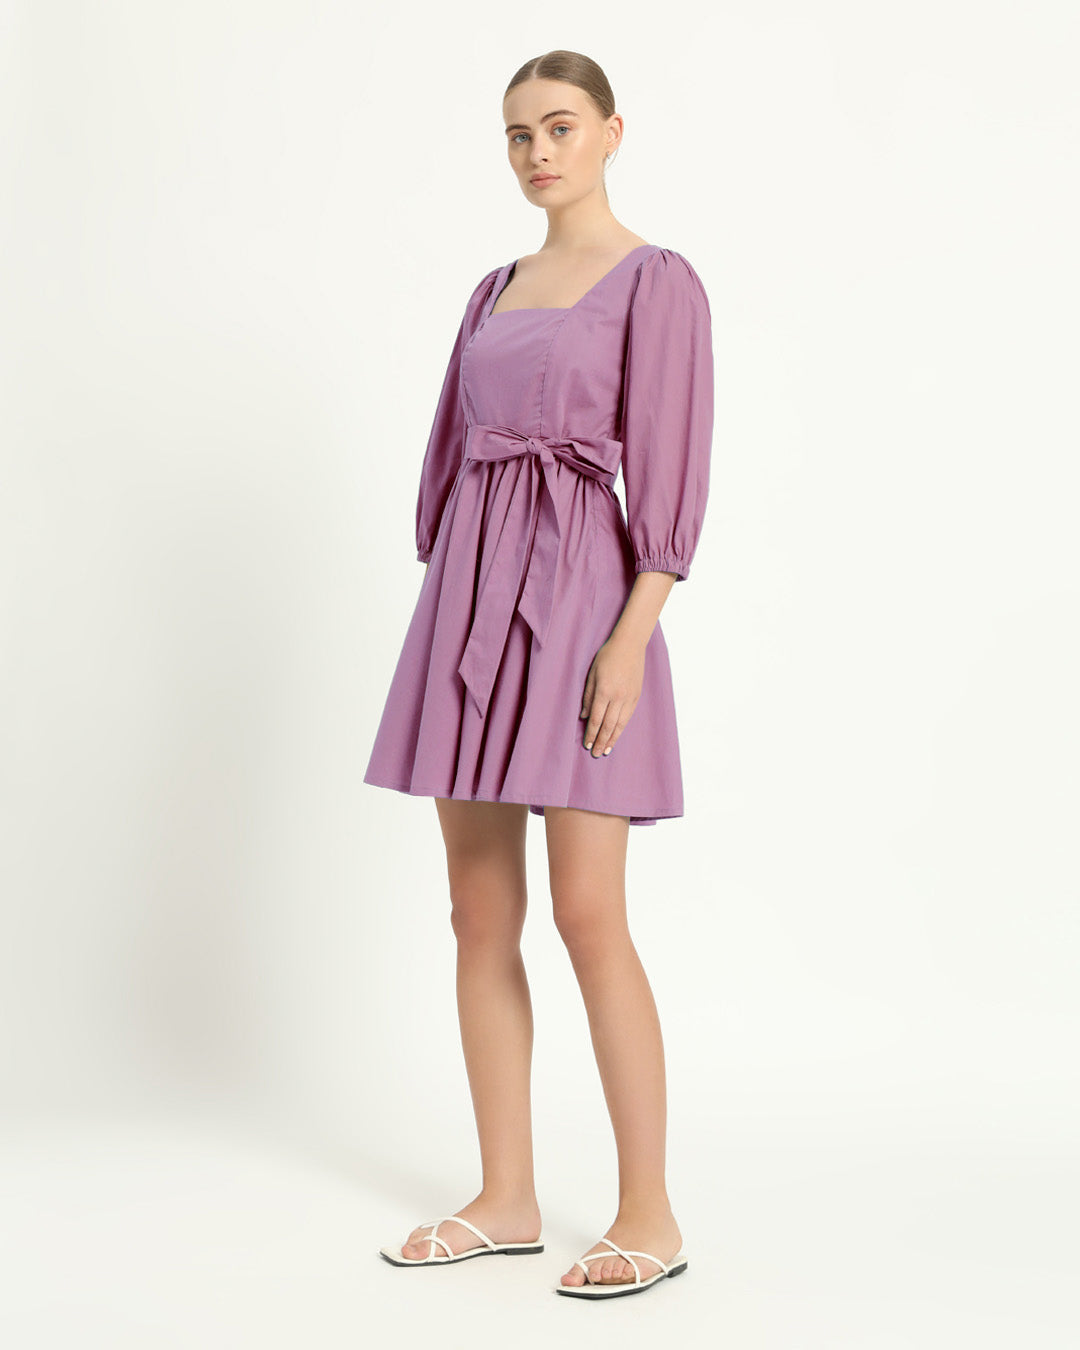 The Winklern Purple Swirl Cotton Dress